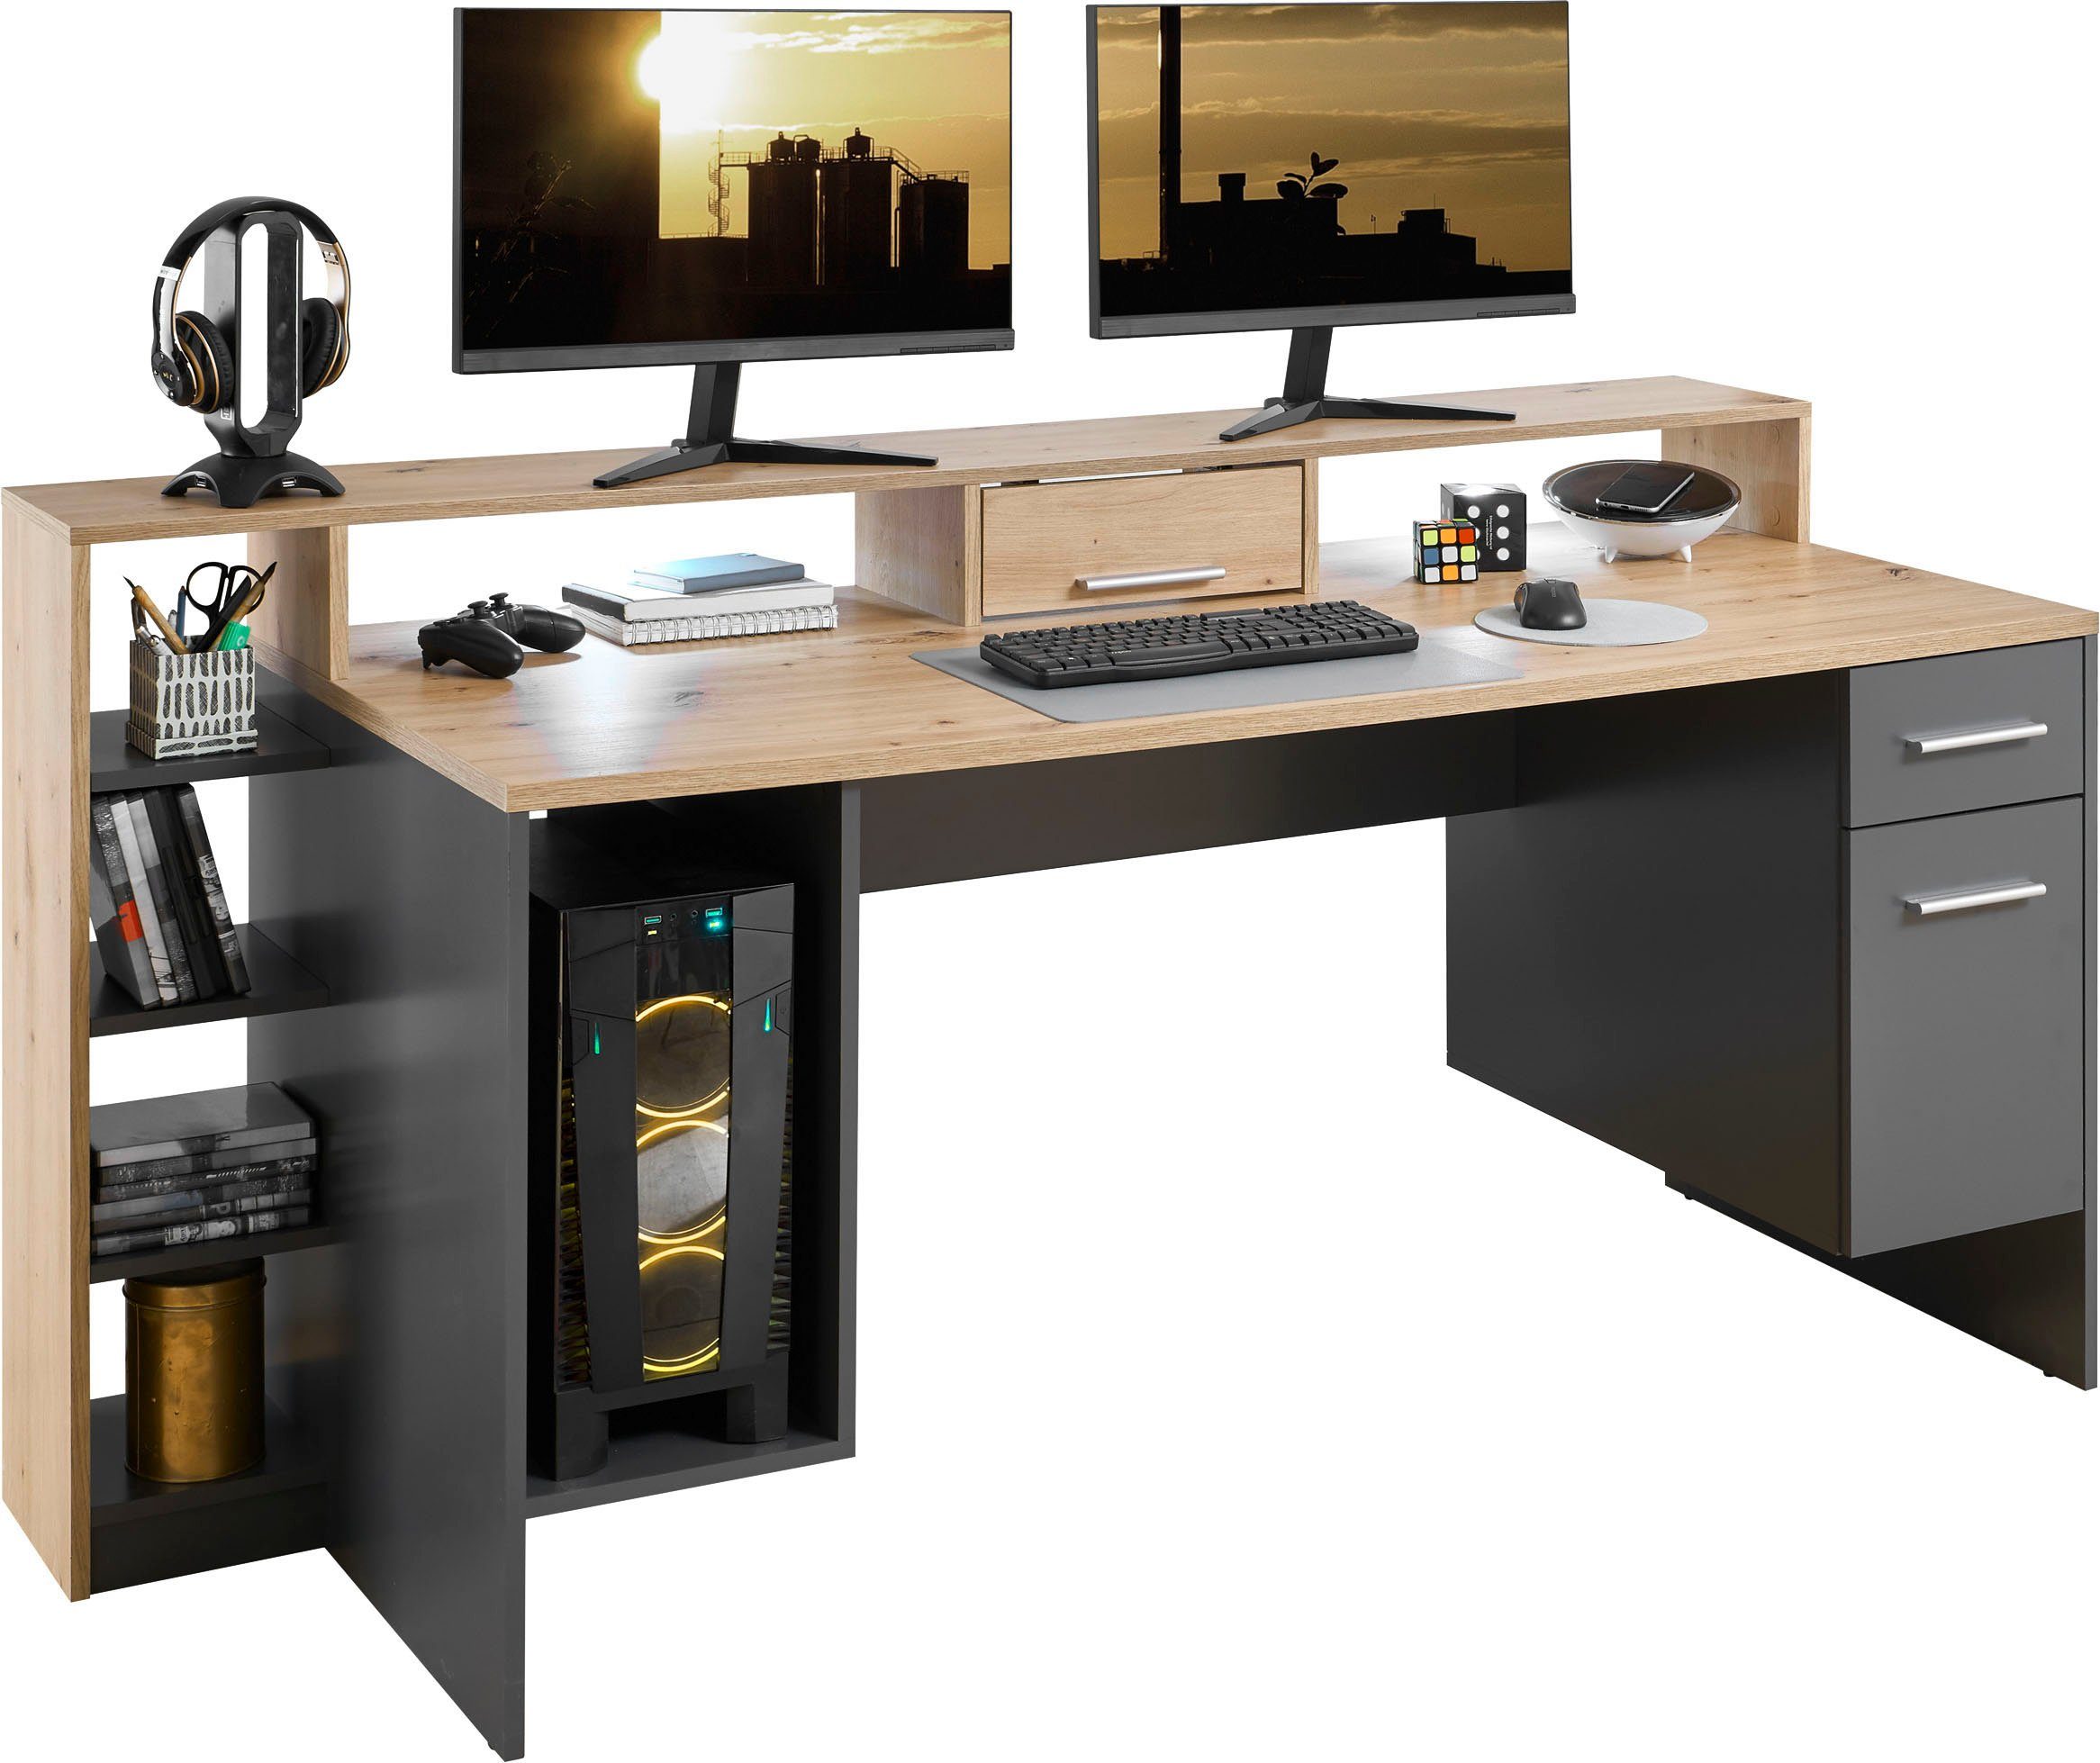 BEGA OFFICE Gamingtisch inkl. Beleuchtung, 4, Highscore Desktopfach LED Grau Computertisch mit